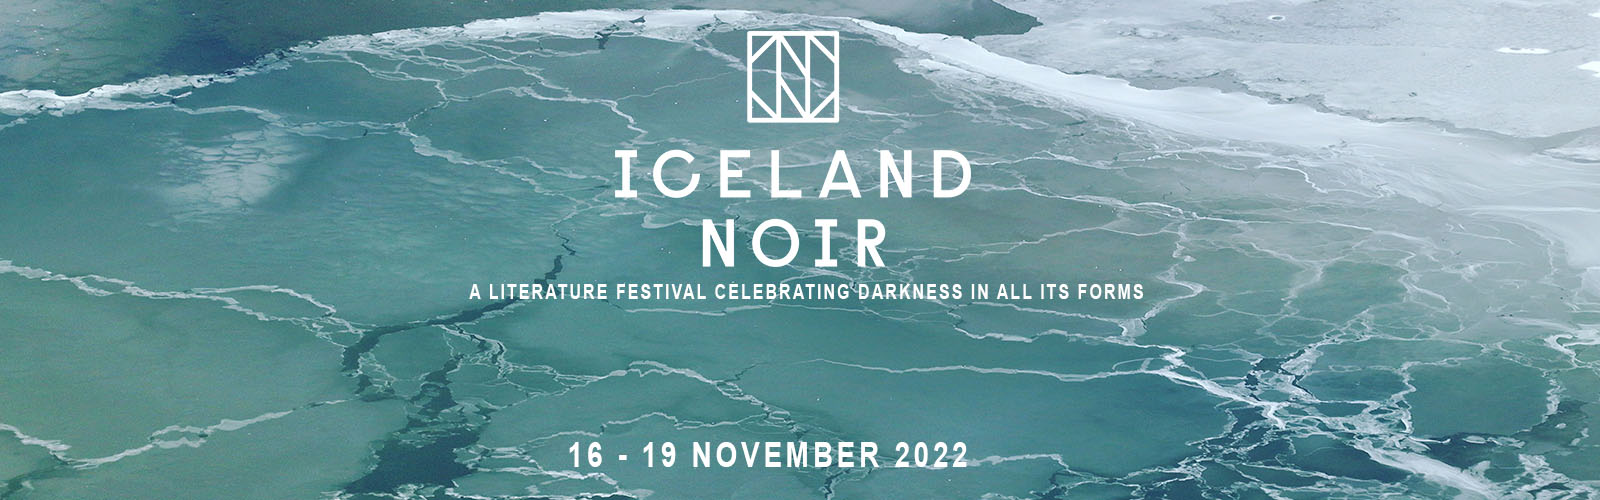 Iceland Noir